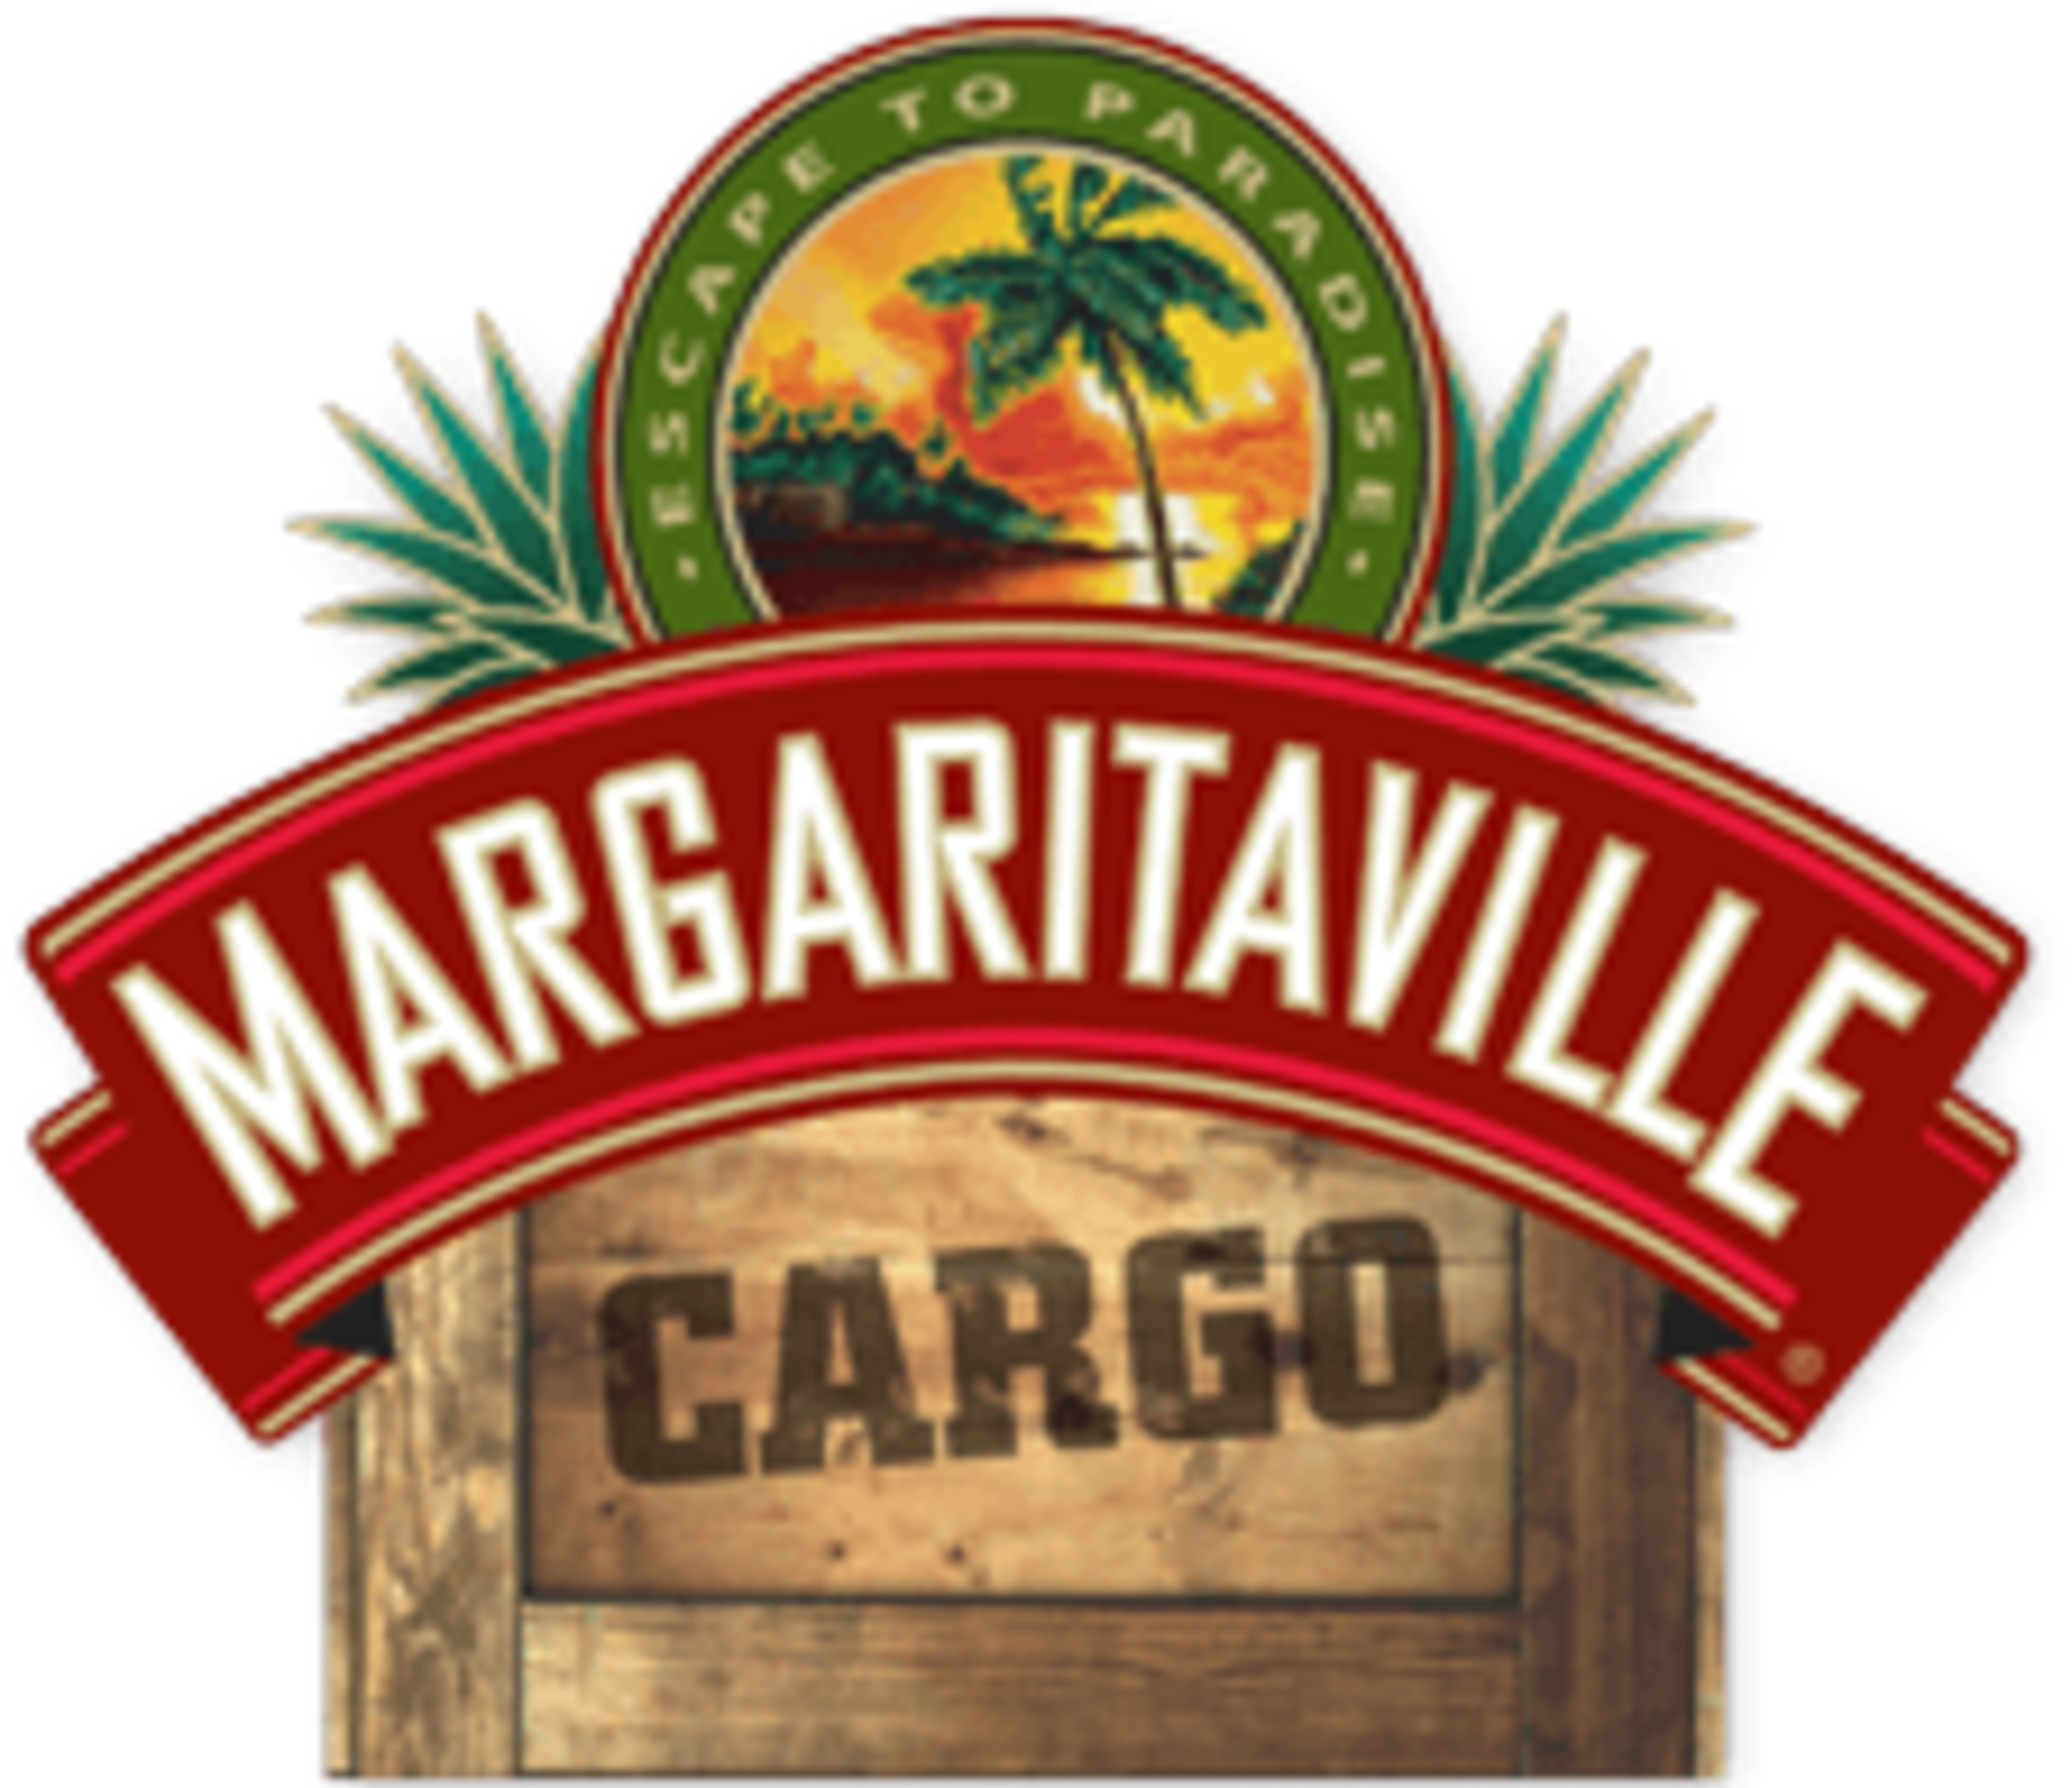 Margaritaville Code